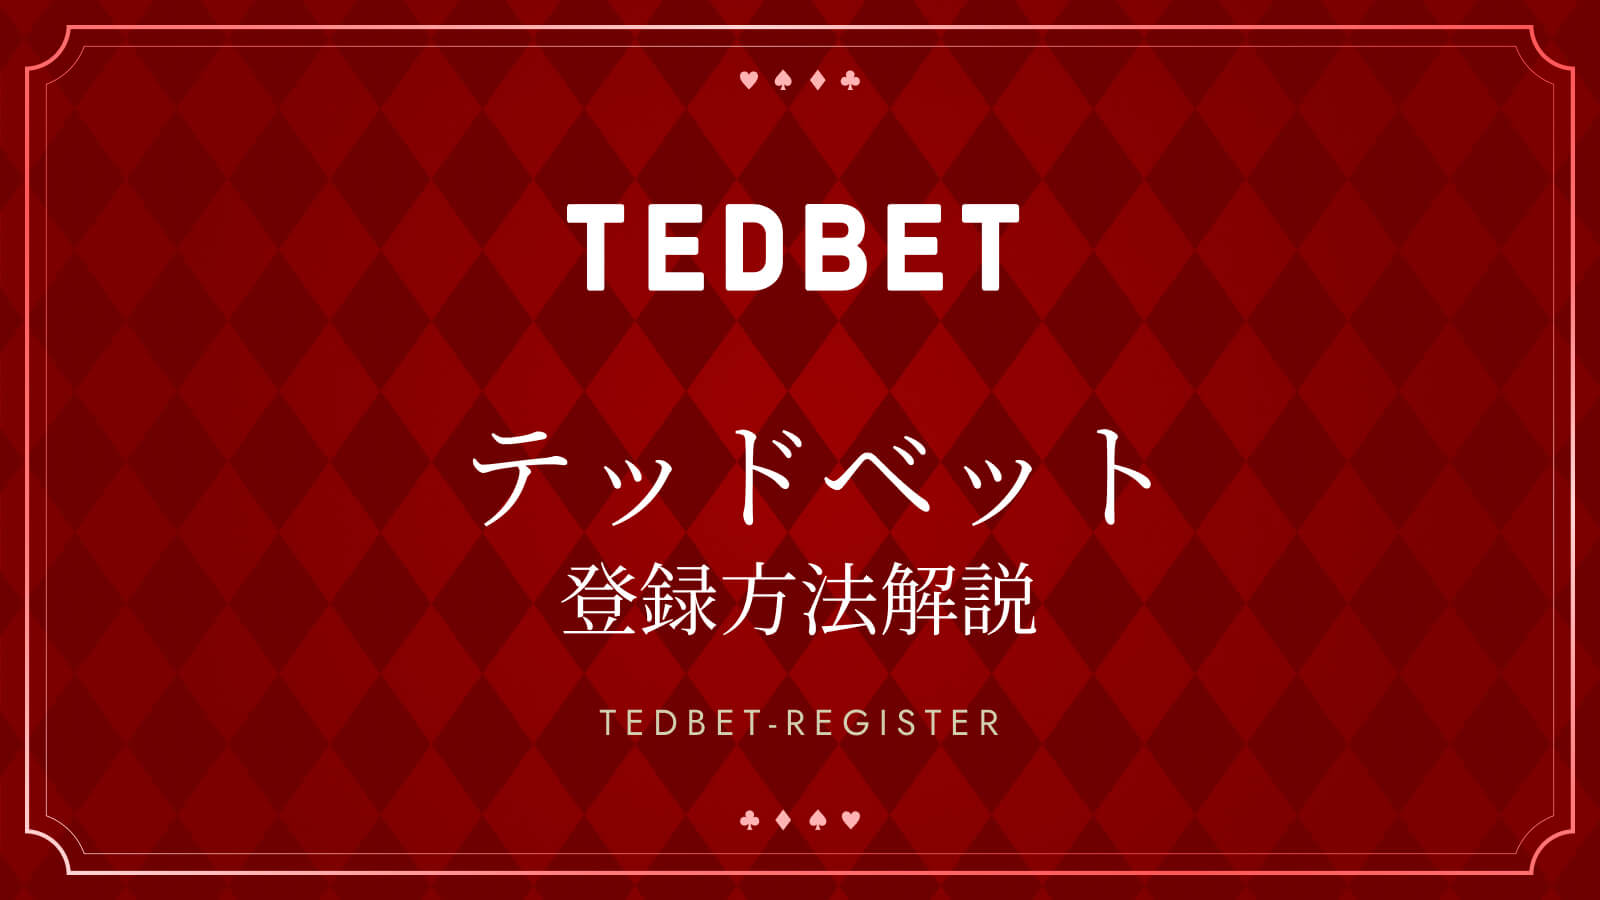 テッドベットの登録方法を解説 TEDBET REGISTER